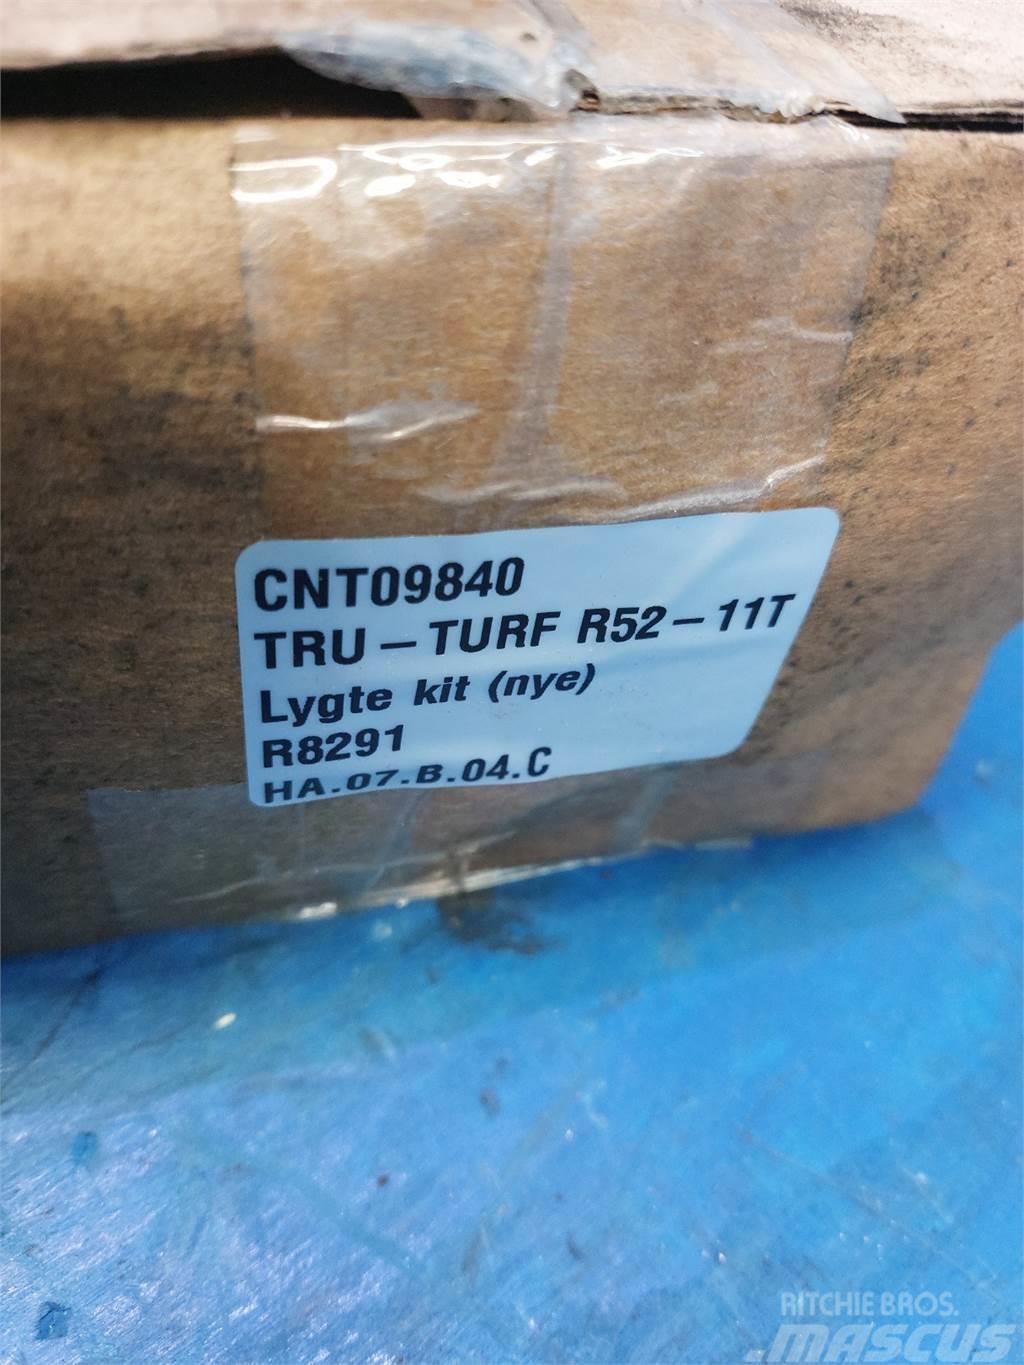  Tru-Turf R52 Citi